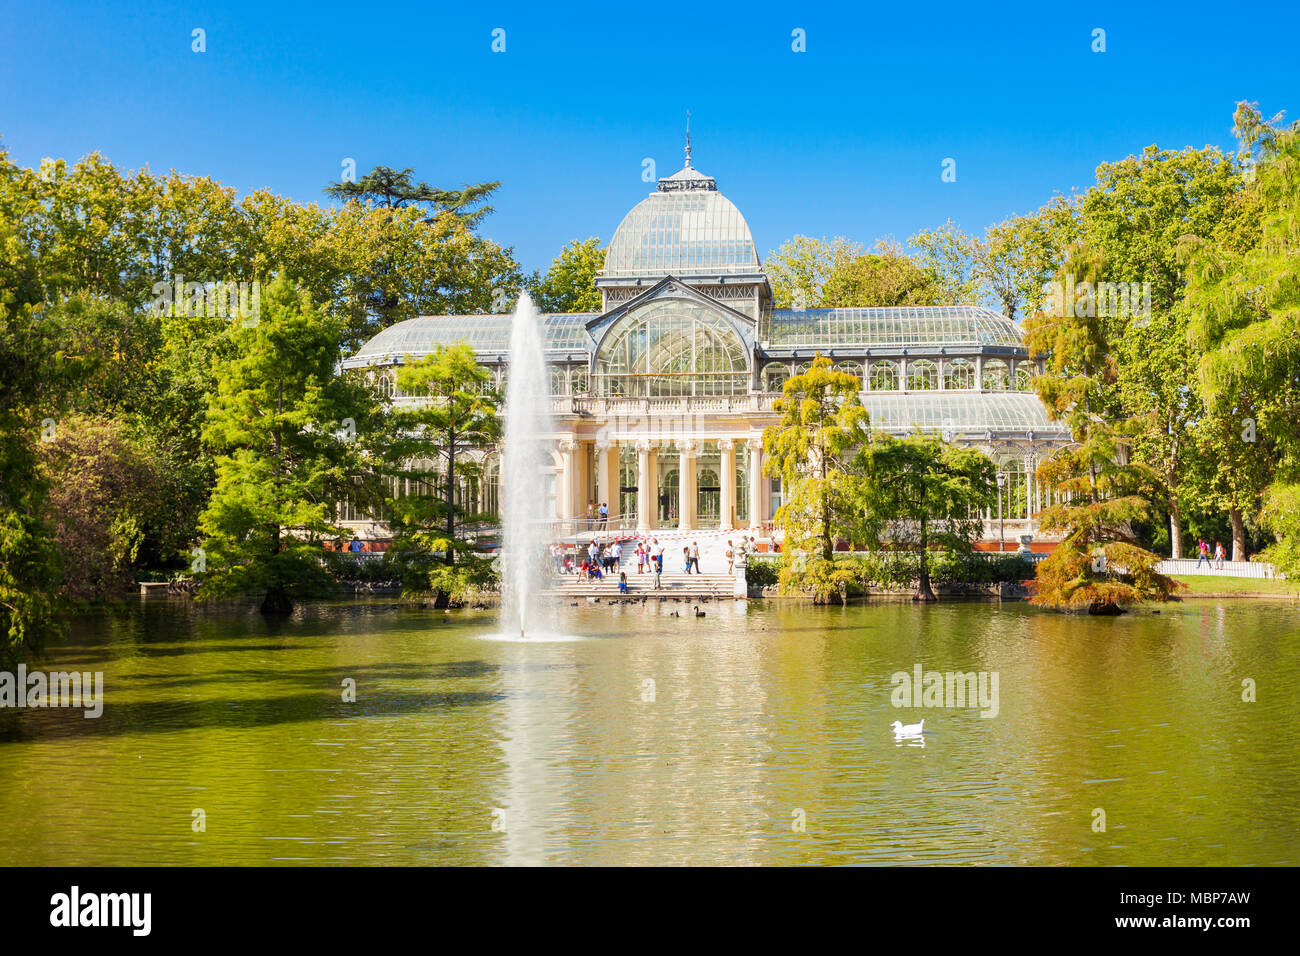 Il palazzo di cristallo o Palacio de Cristalis nel Buen Retiro Park, uno dei parchi più grandi della città di Madrid, Spagna. Madrid è la capitale della Spagna. Foto Stock